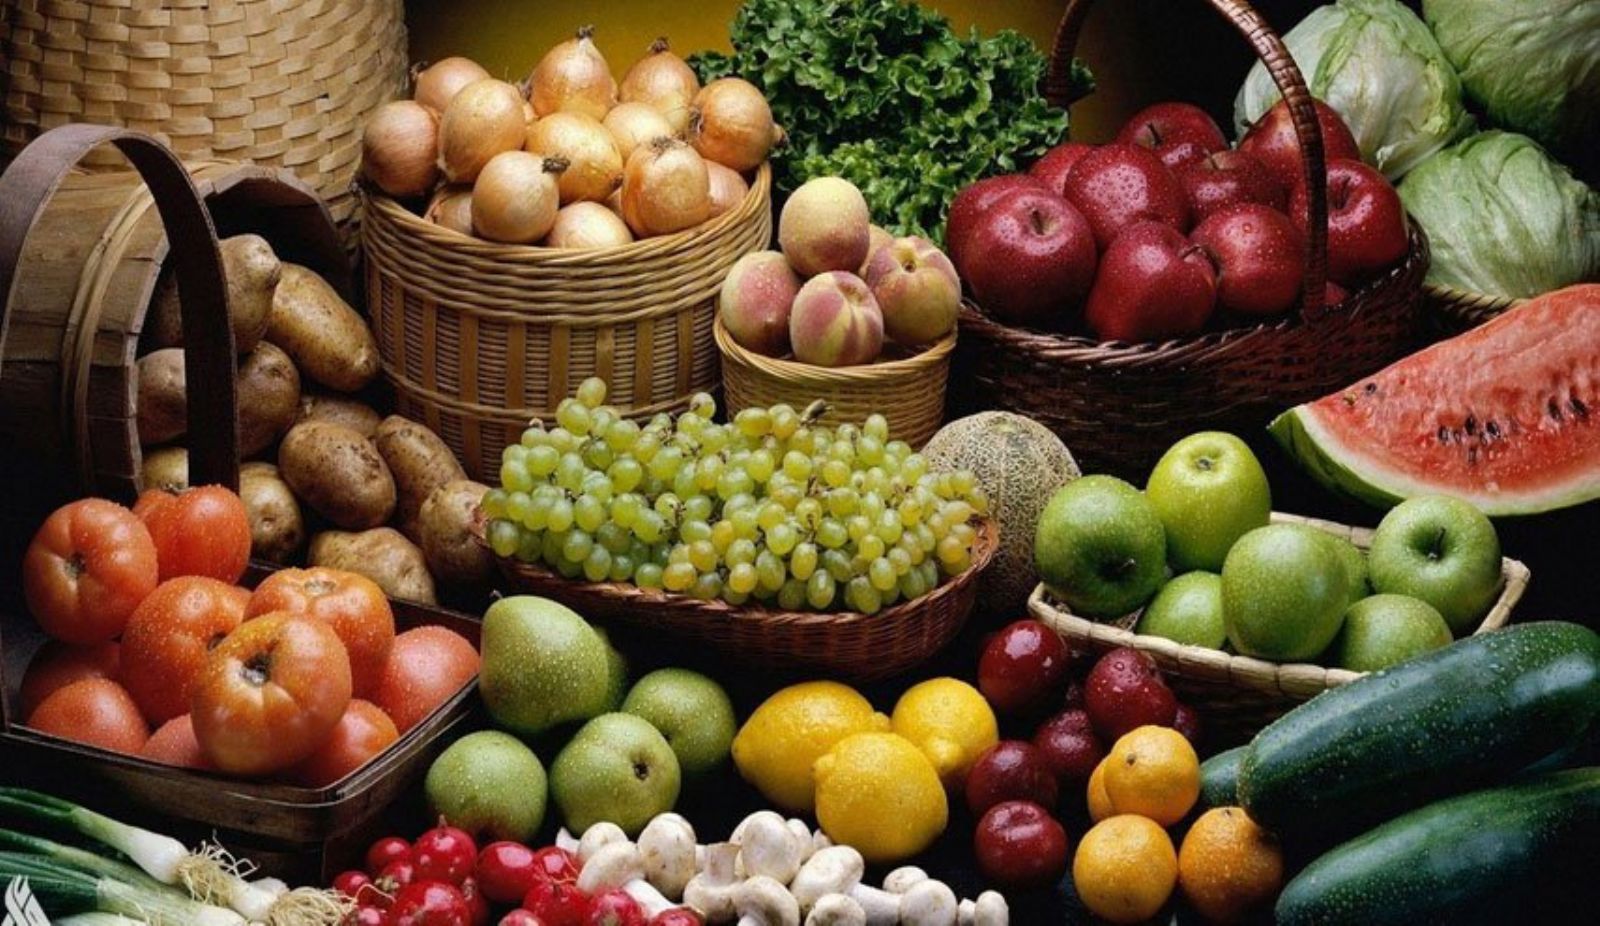 تنوع الفواكه والخضروات يفتح الشهية للصحة